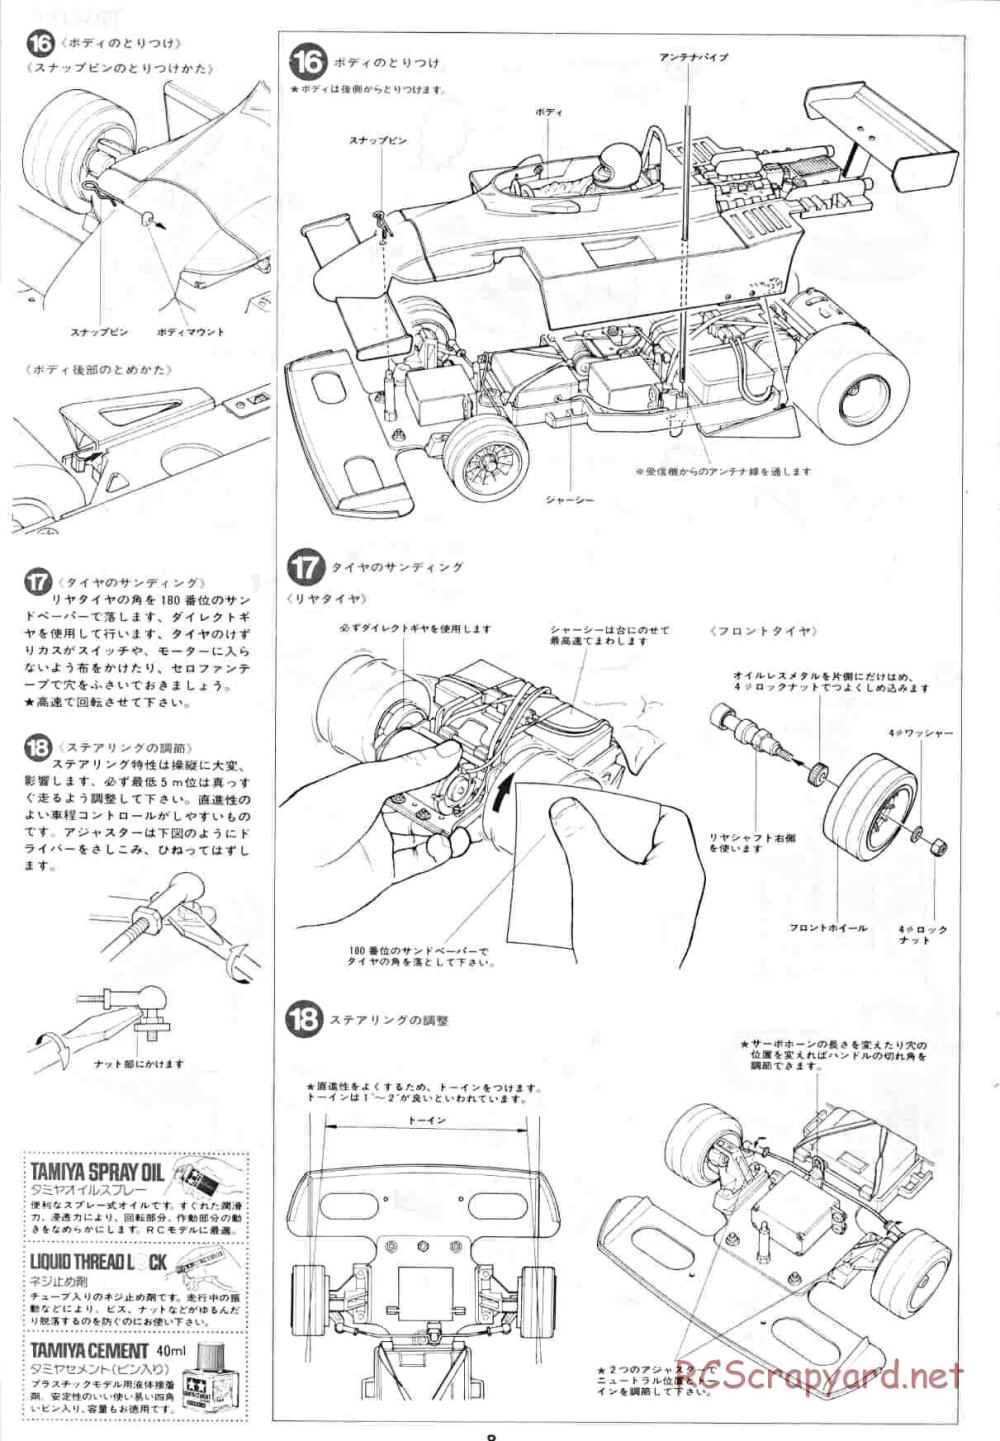 Tamiya - Honda F2 (CS) - 58030 - Manual - Page 8